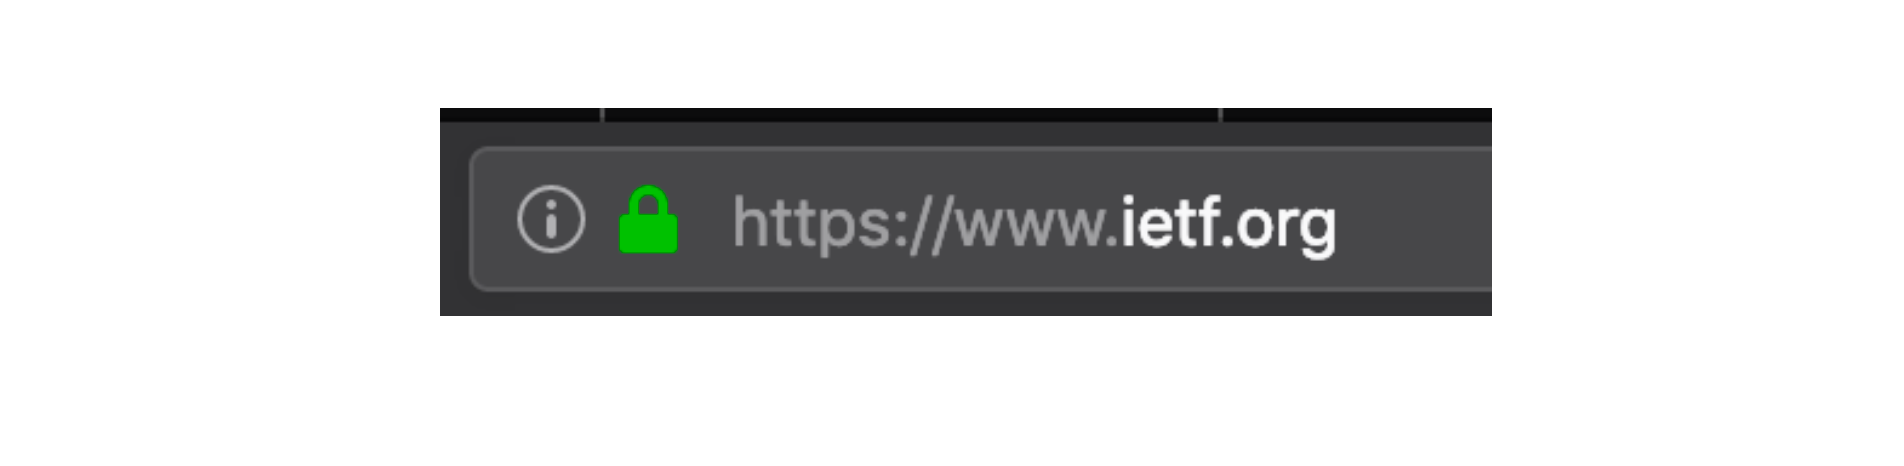 browser address bar